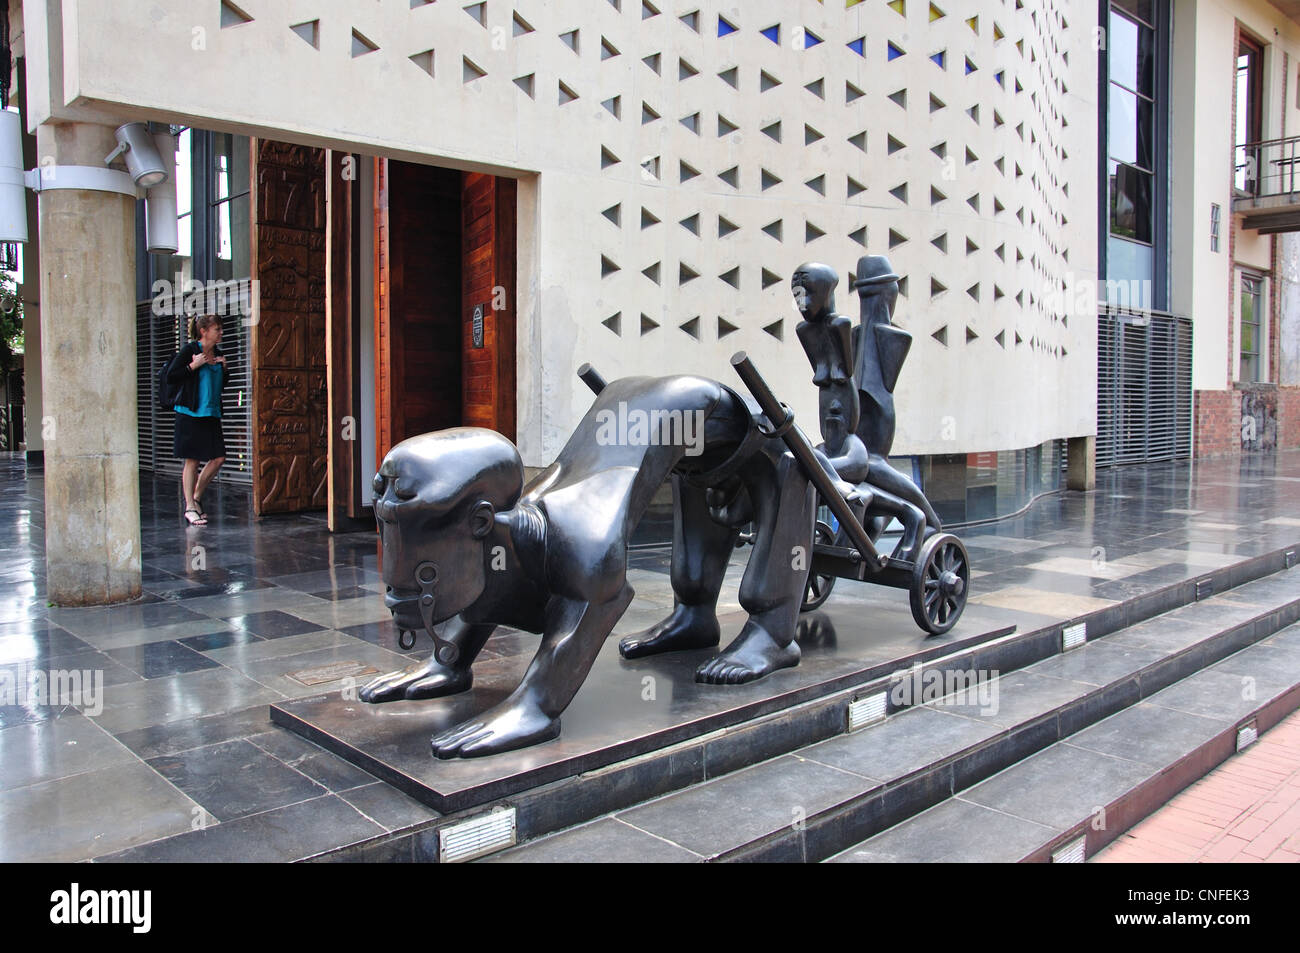 Histoire La sculpture à l'ancien fort complexe carcéral, Constitution Hill, Hillbrow, Johannesburg, Gauteng, Afrique du Sud Banque D'Images